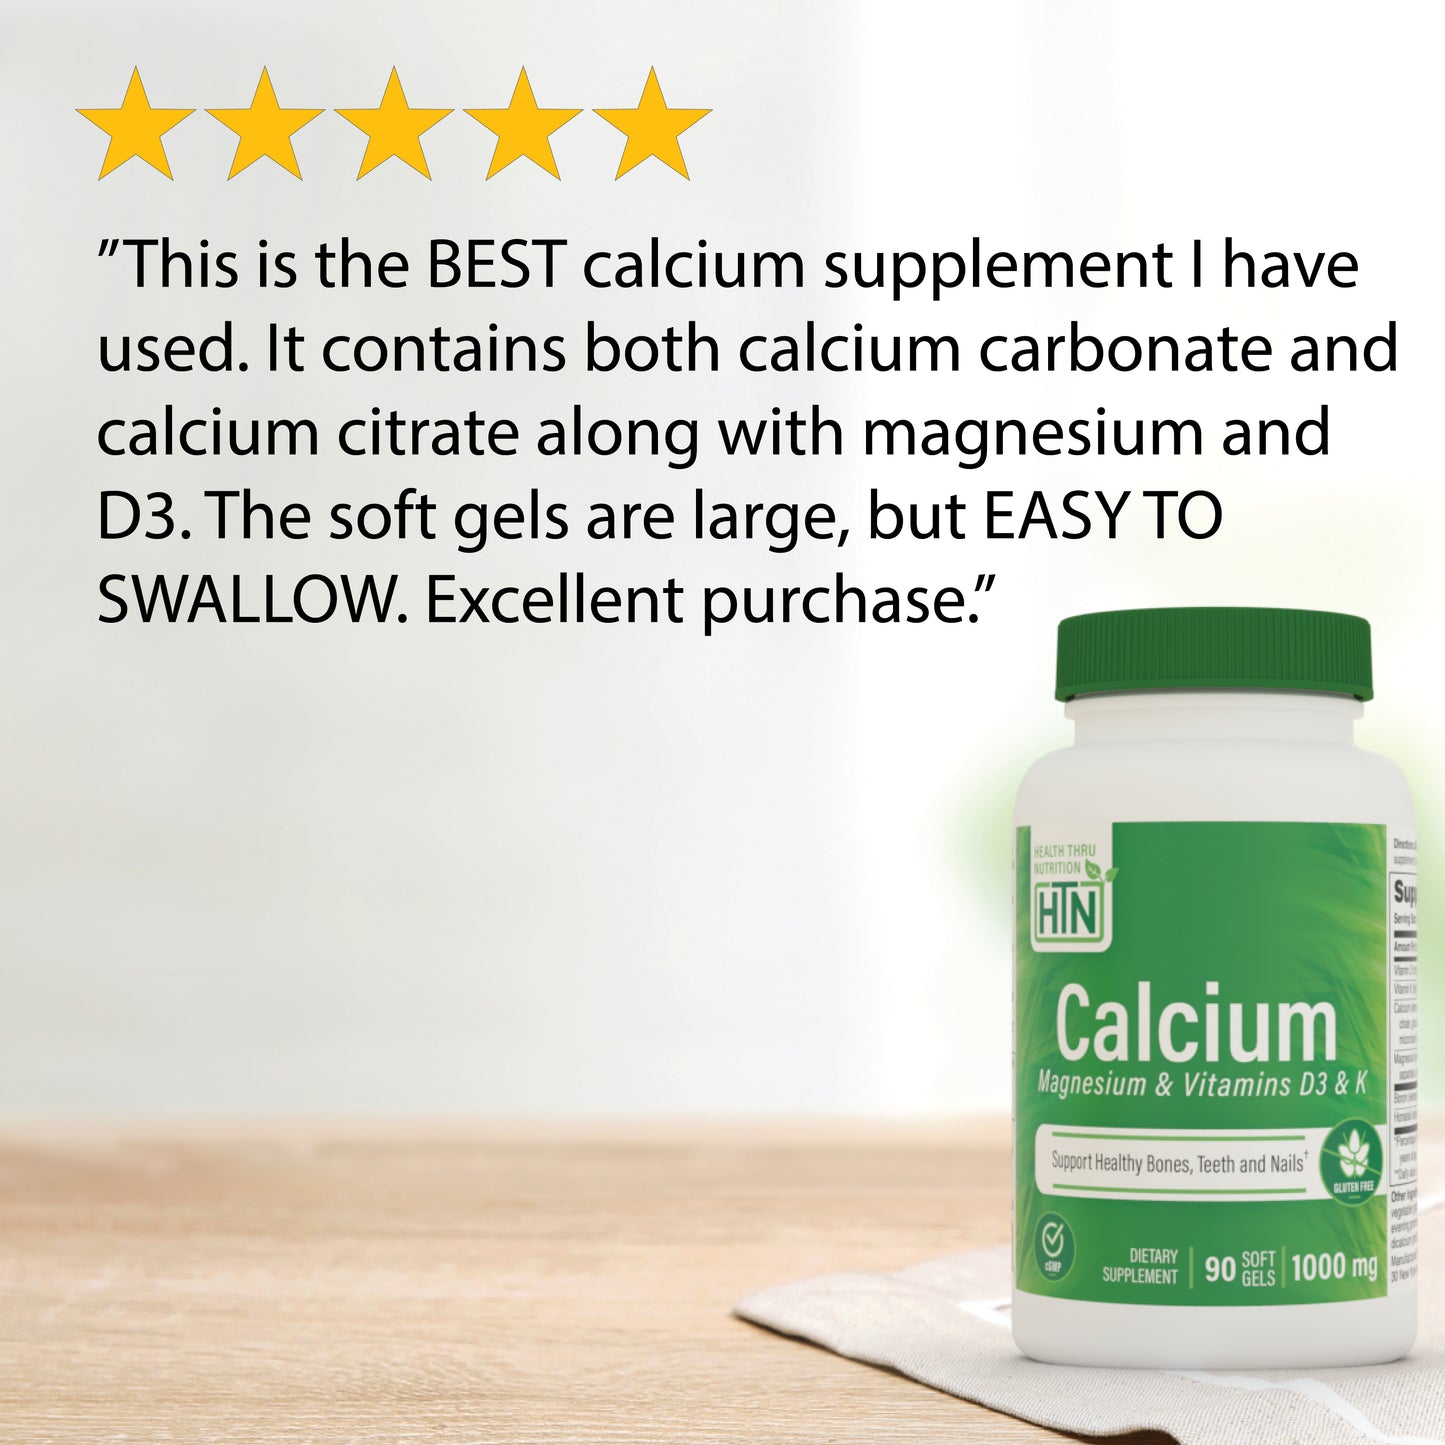 Calcium Magnesium & Vitamins D3 and K